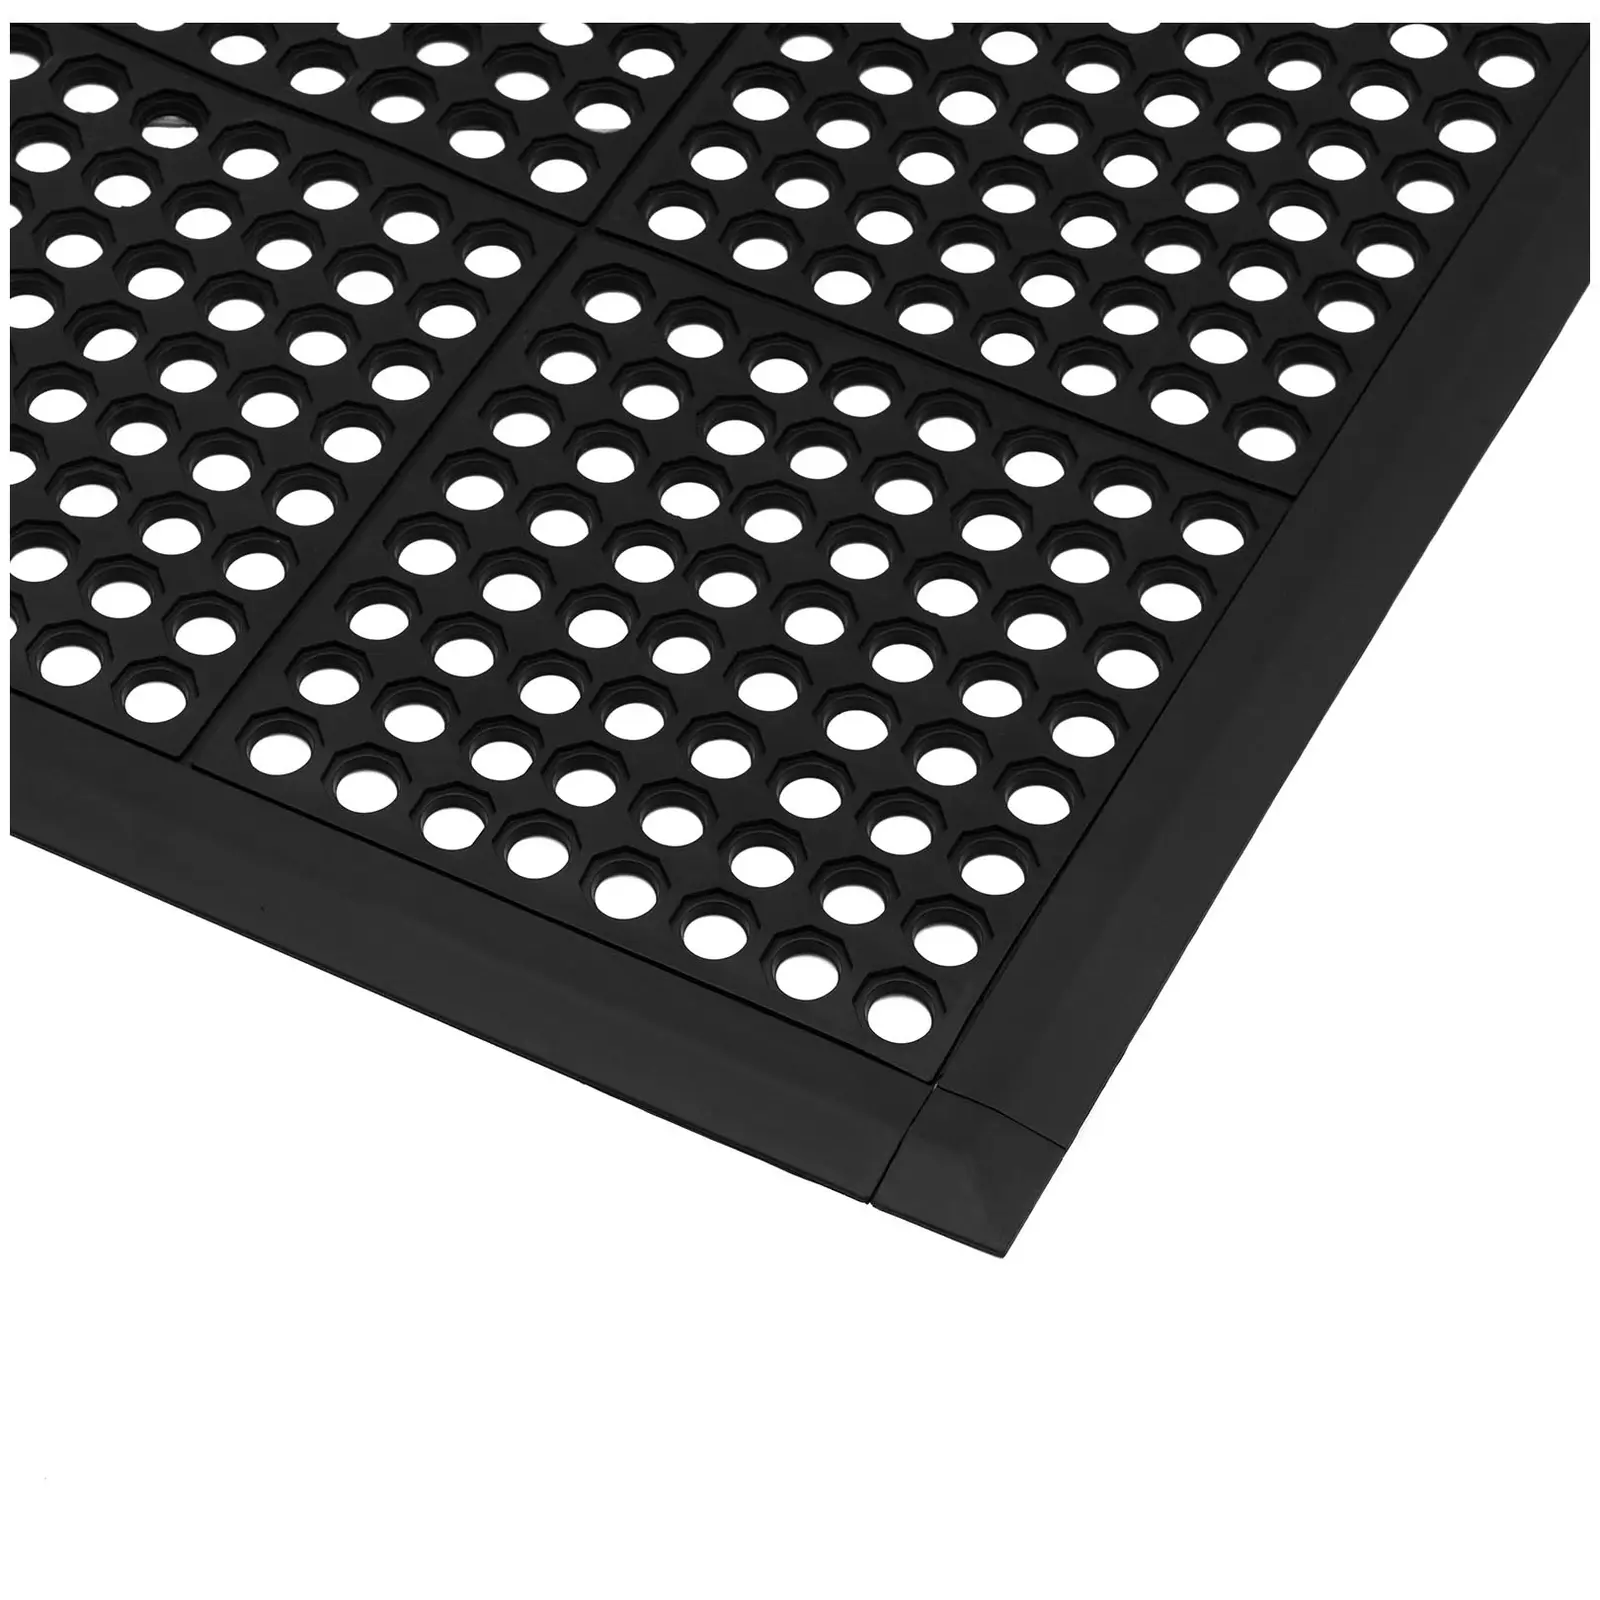 Abschlußleiste - für Ringgummimatte 10050276 - 95 x 6 x 1 cm - schwarz